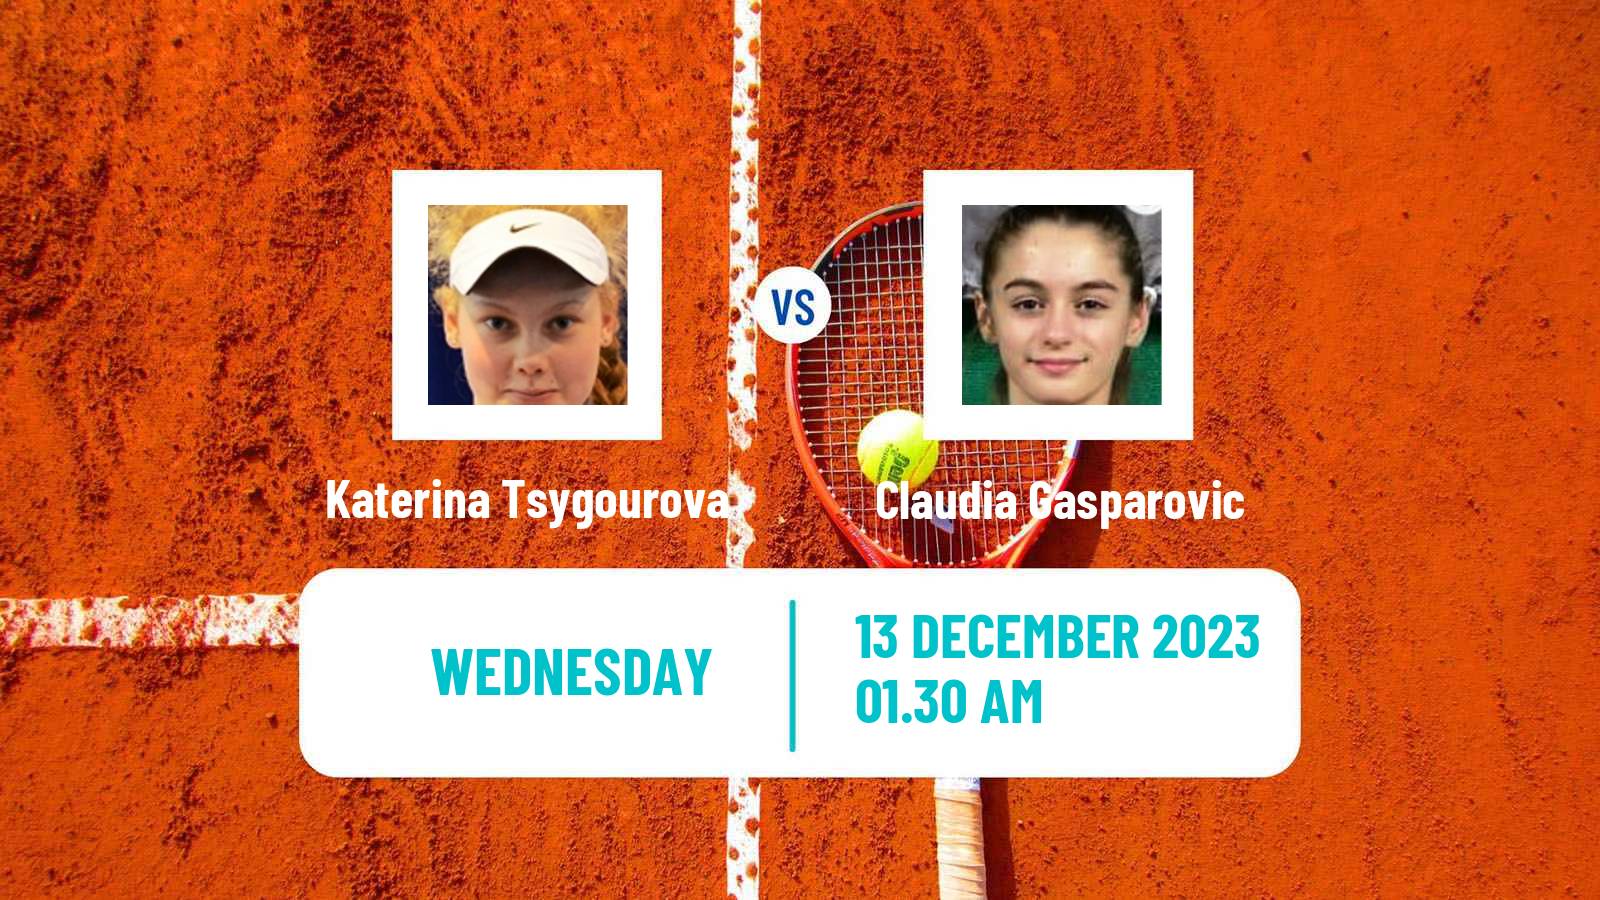 Tennis ITF W15 Antalya 22 Women Katerina Tsygourova - Claudia Gasparovic